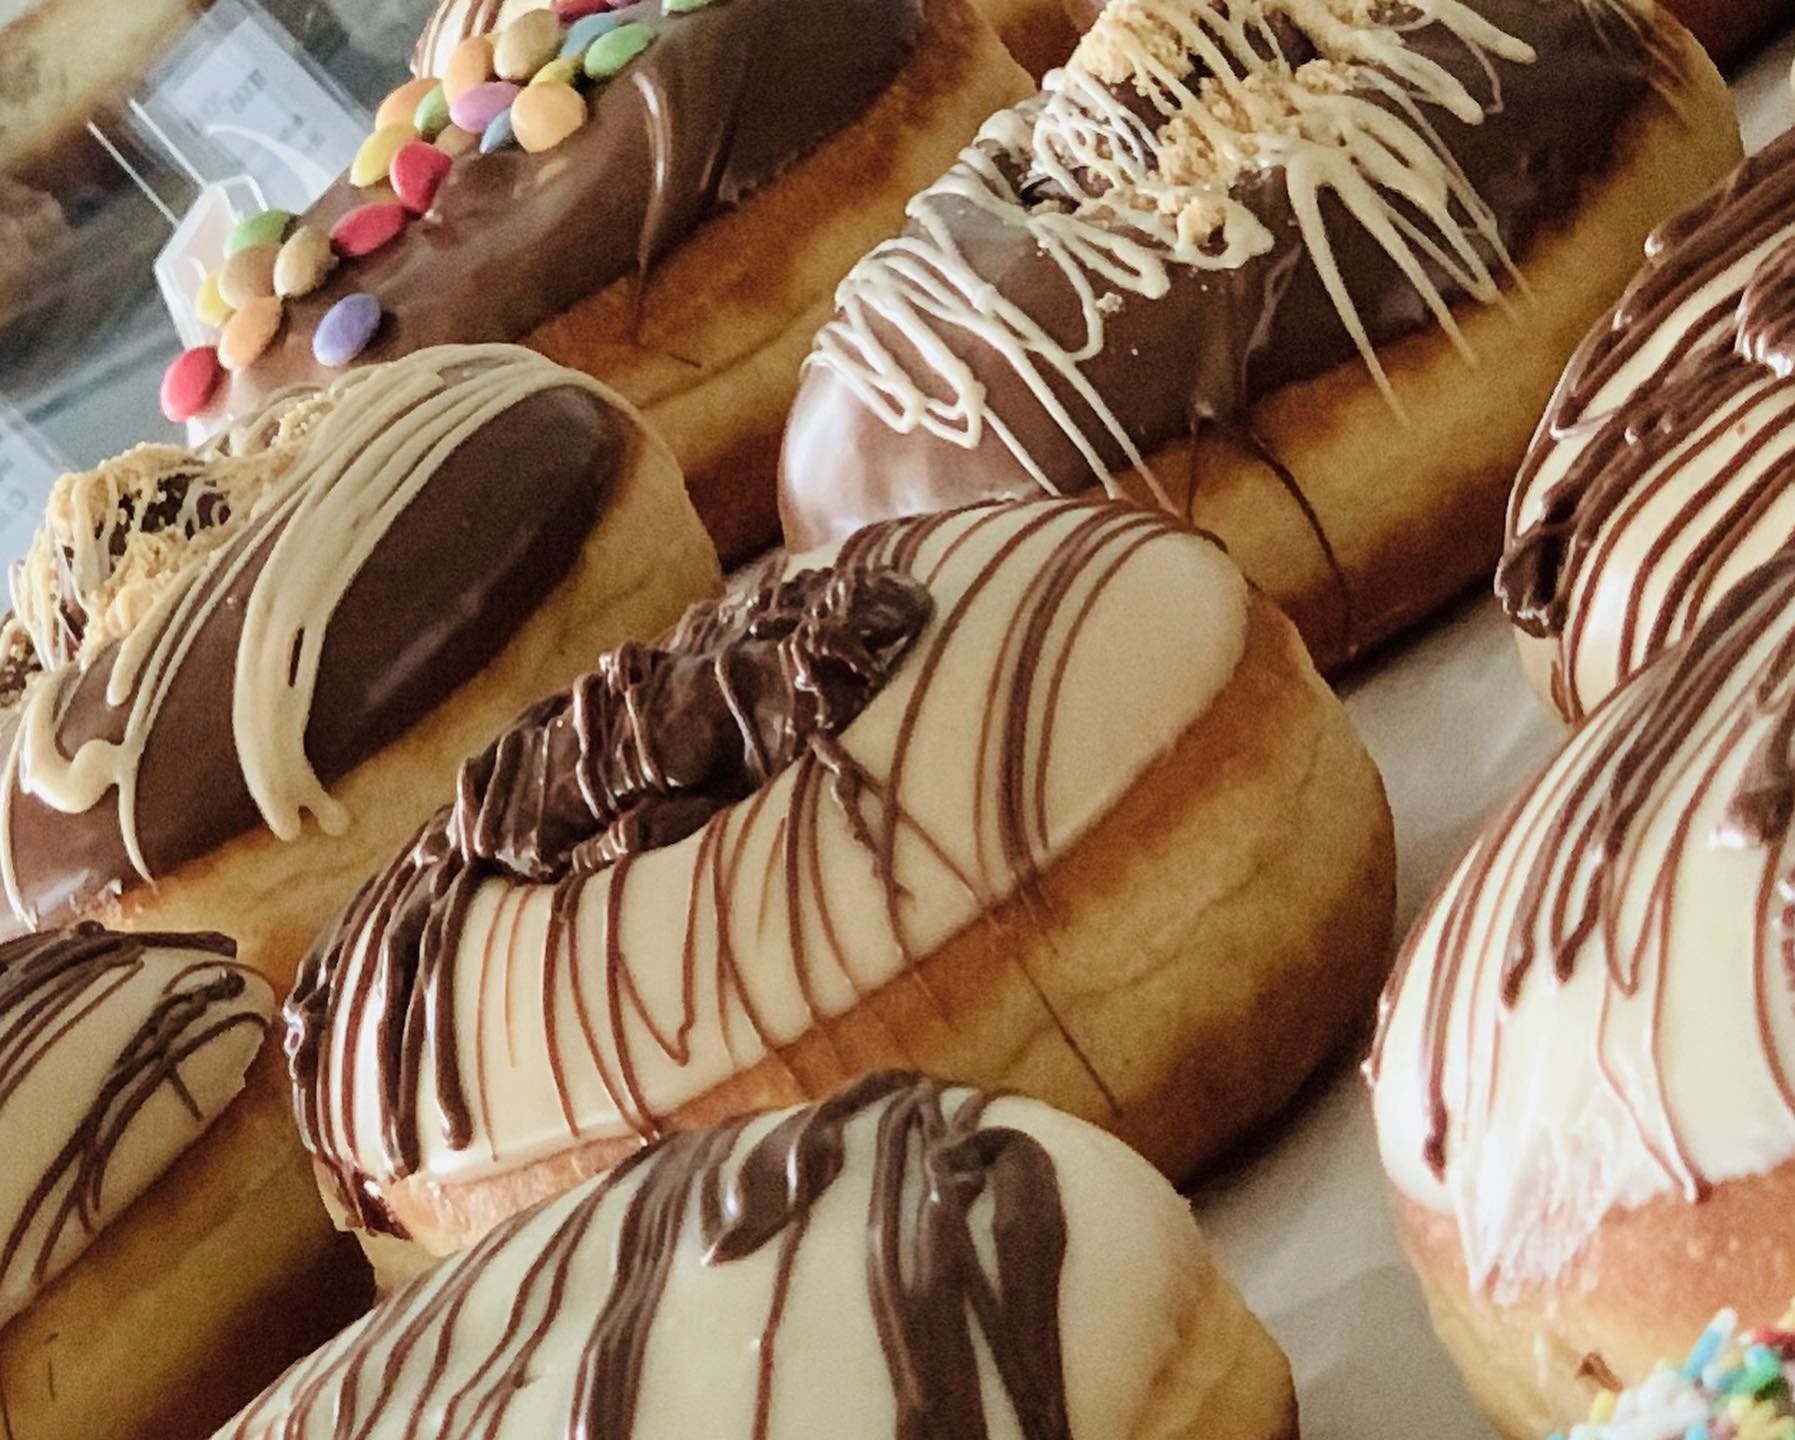 Αυτά τα donuts έρχονται στο σπίτι σου και σου προσφέρουν μια γλυκιά νότα στη μέρα σου